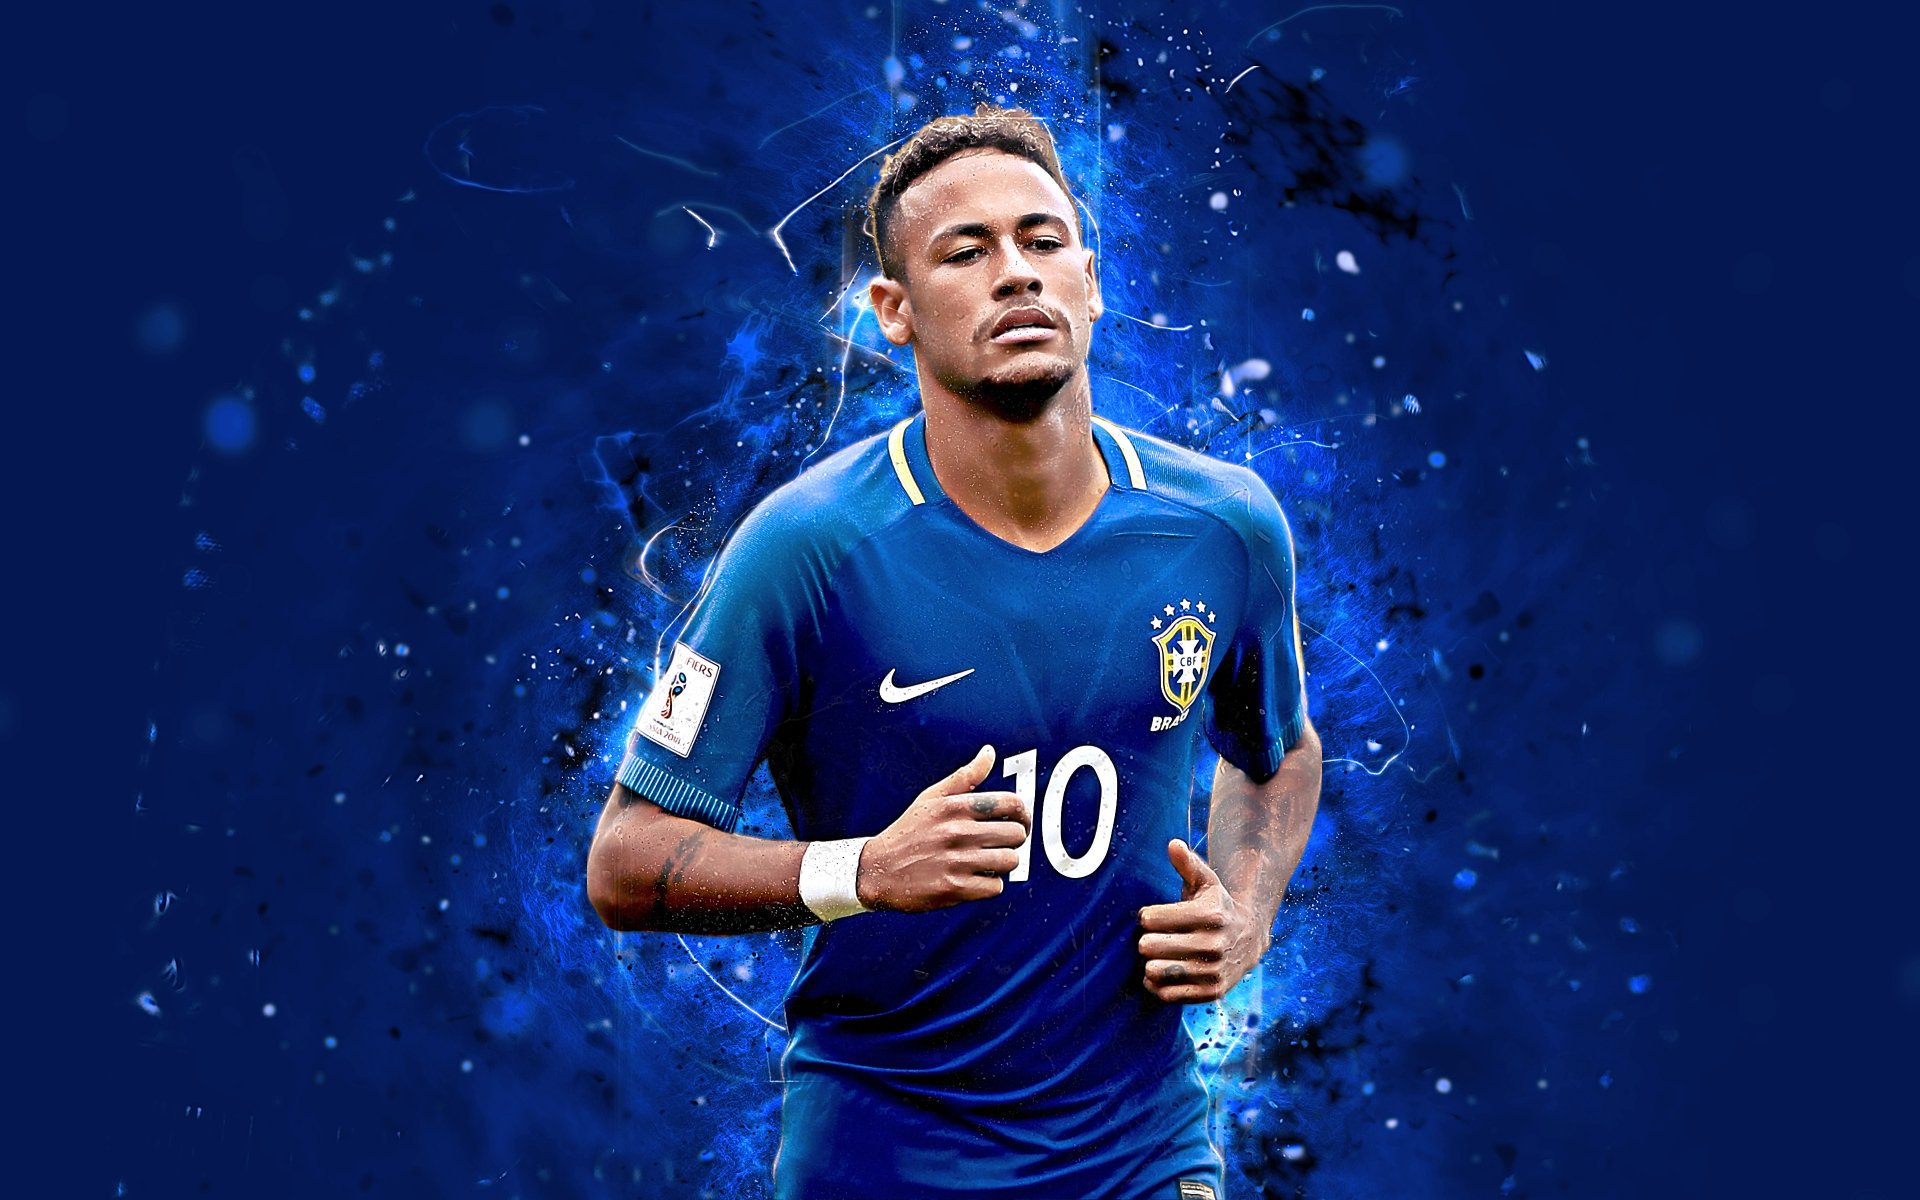 Ảnh Neymar - Cầu Thủ Bóng Đá Ngầu, Đẹp Nhất Tặng Fan